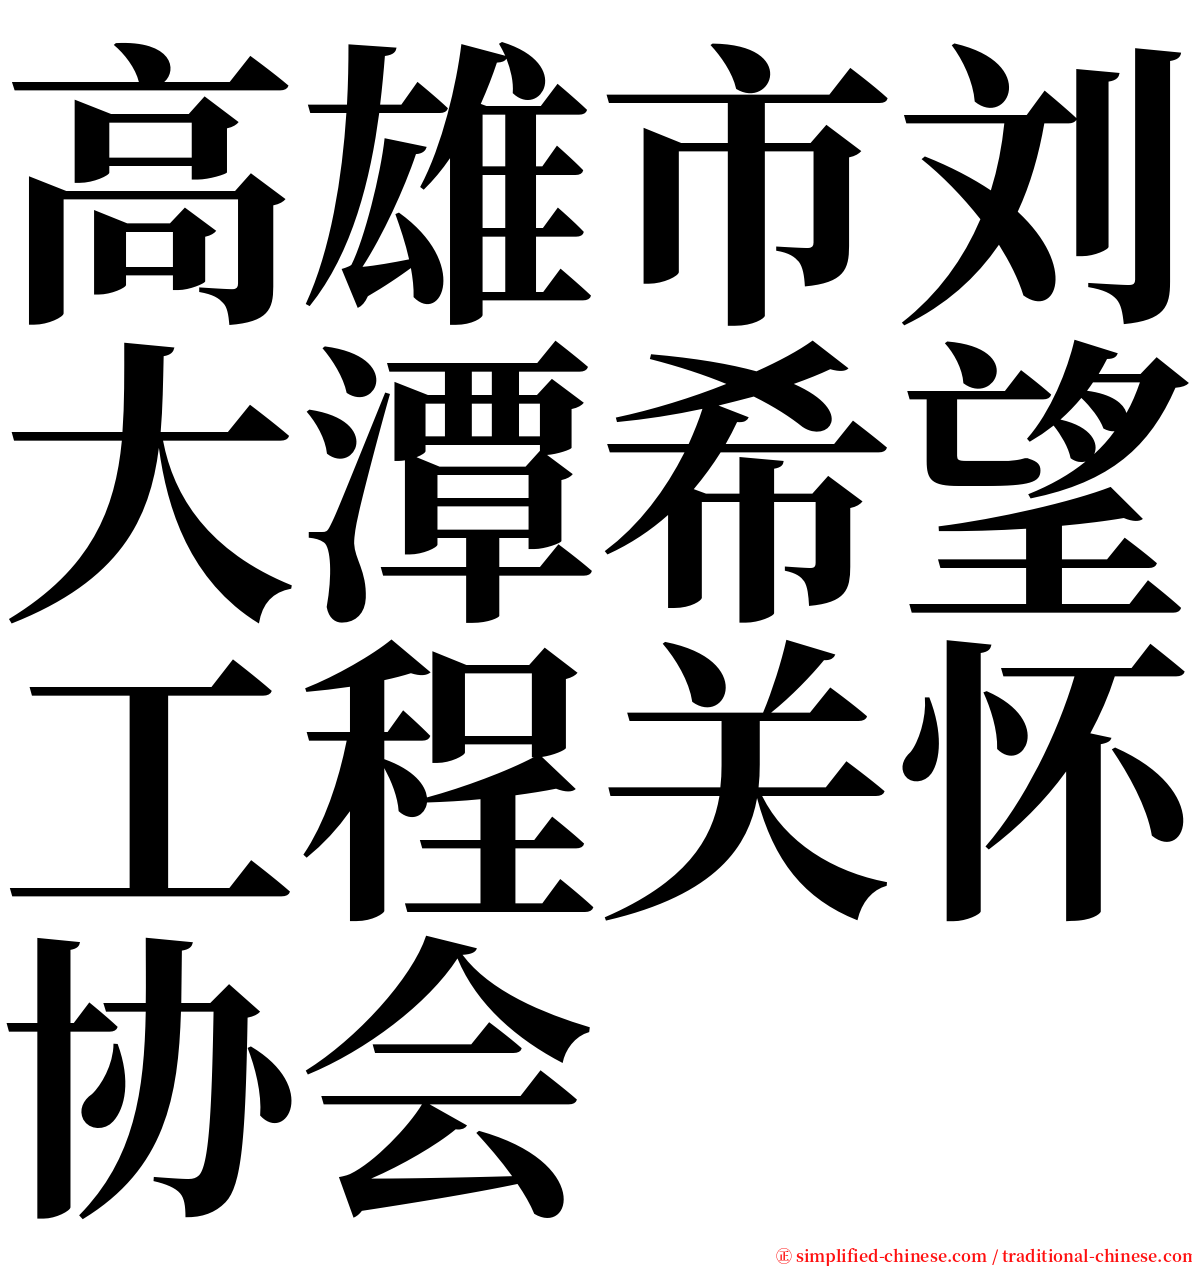 高雄市刘大潭希望工程关怀协会 serif font